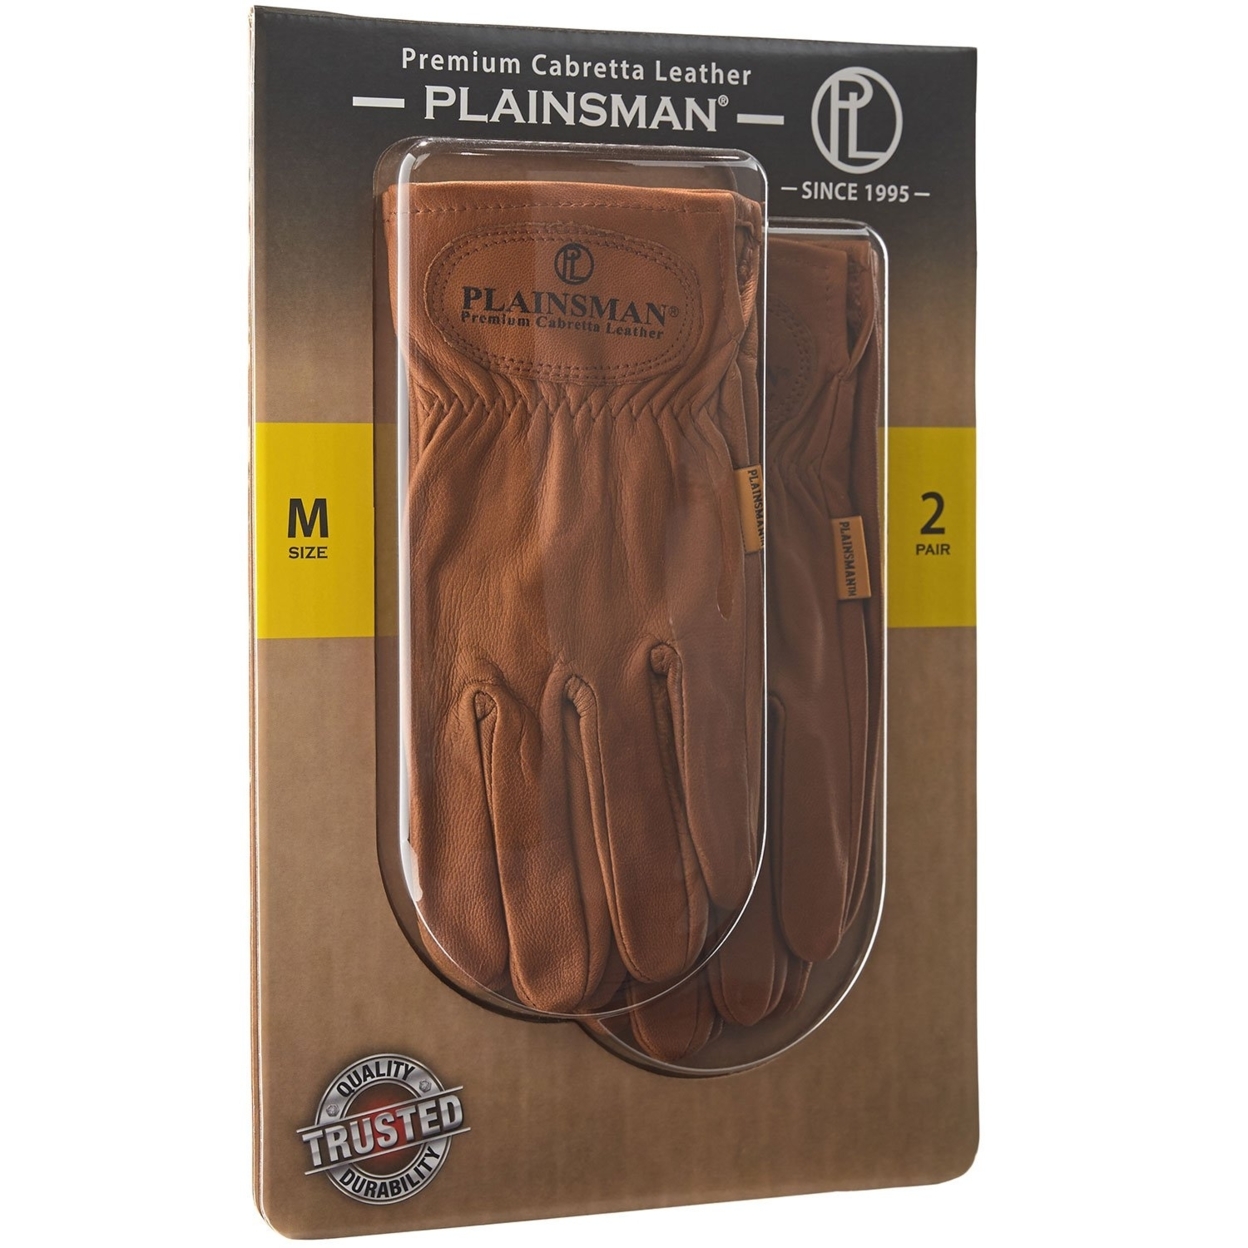 Plainsman Premium Cabretta Leather Gloves (2 Pair, Medium)